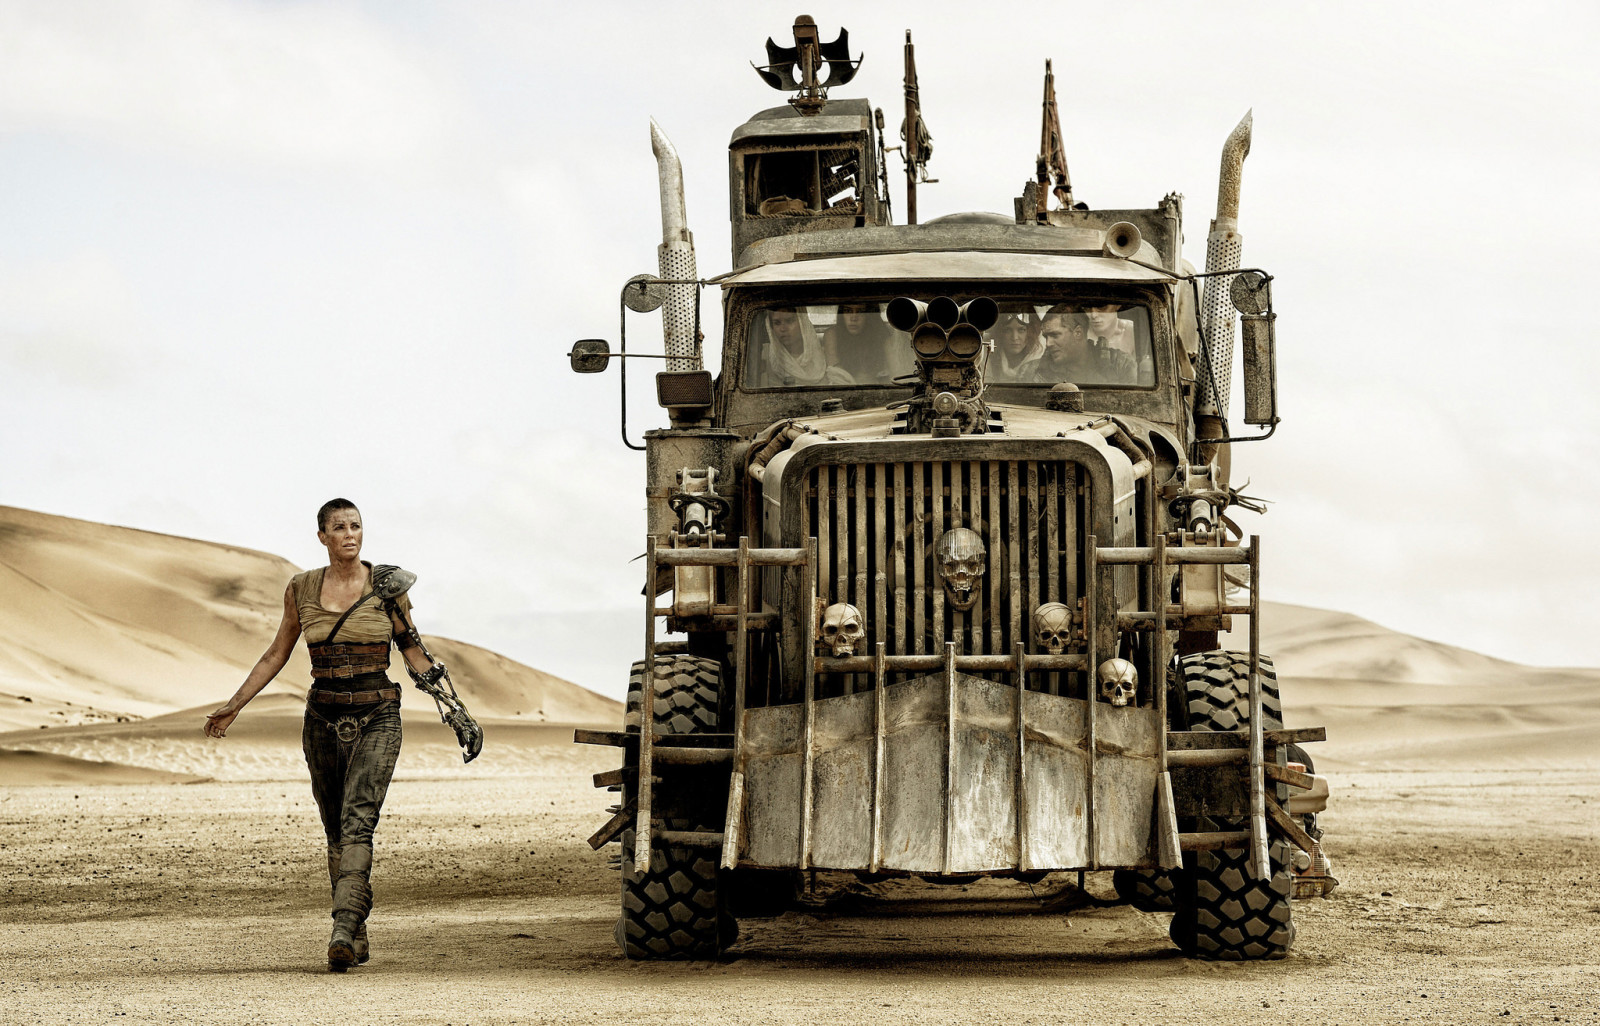 xe tải, máy kéo, Mad Max, Mặt trước, Khoảnh khắc này, Charlize Theron, Đường giận dữ, Cơn thịnh nộ trên đường